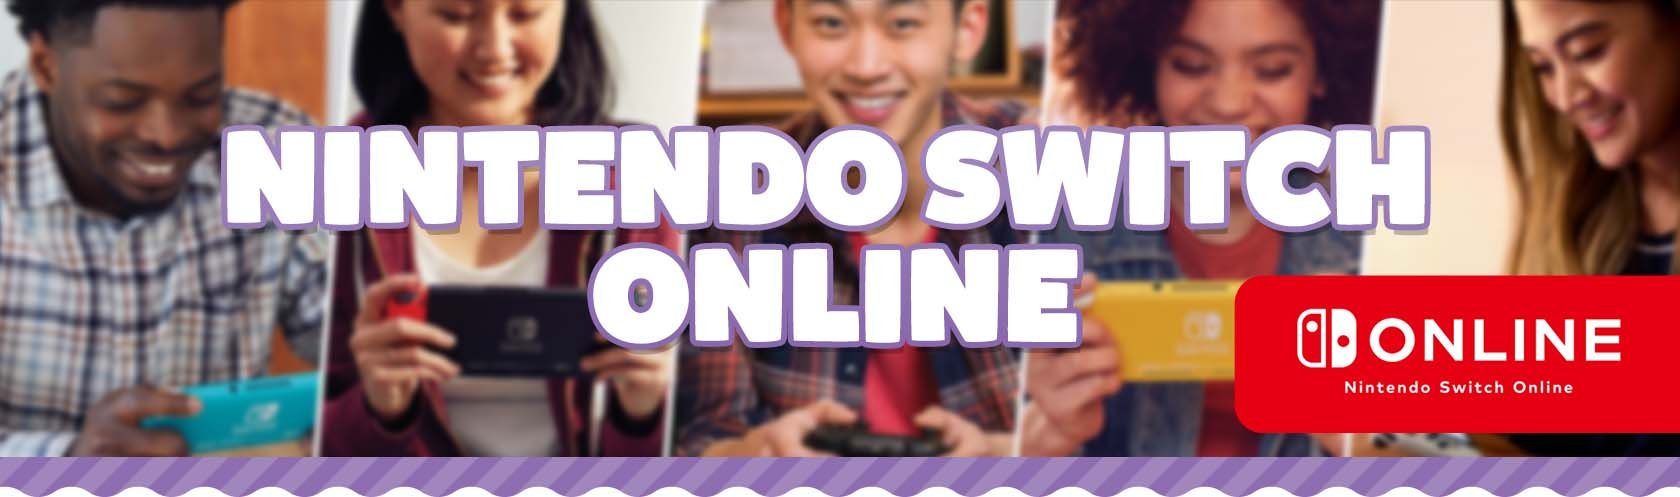 nintendo-switch-online-header